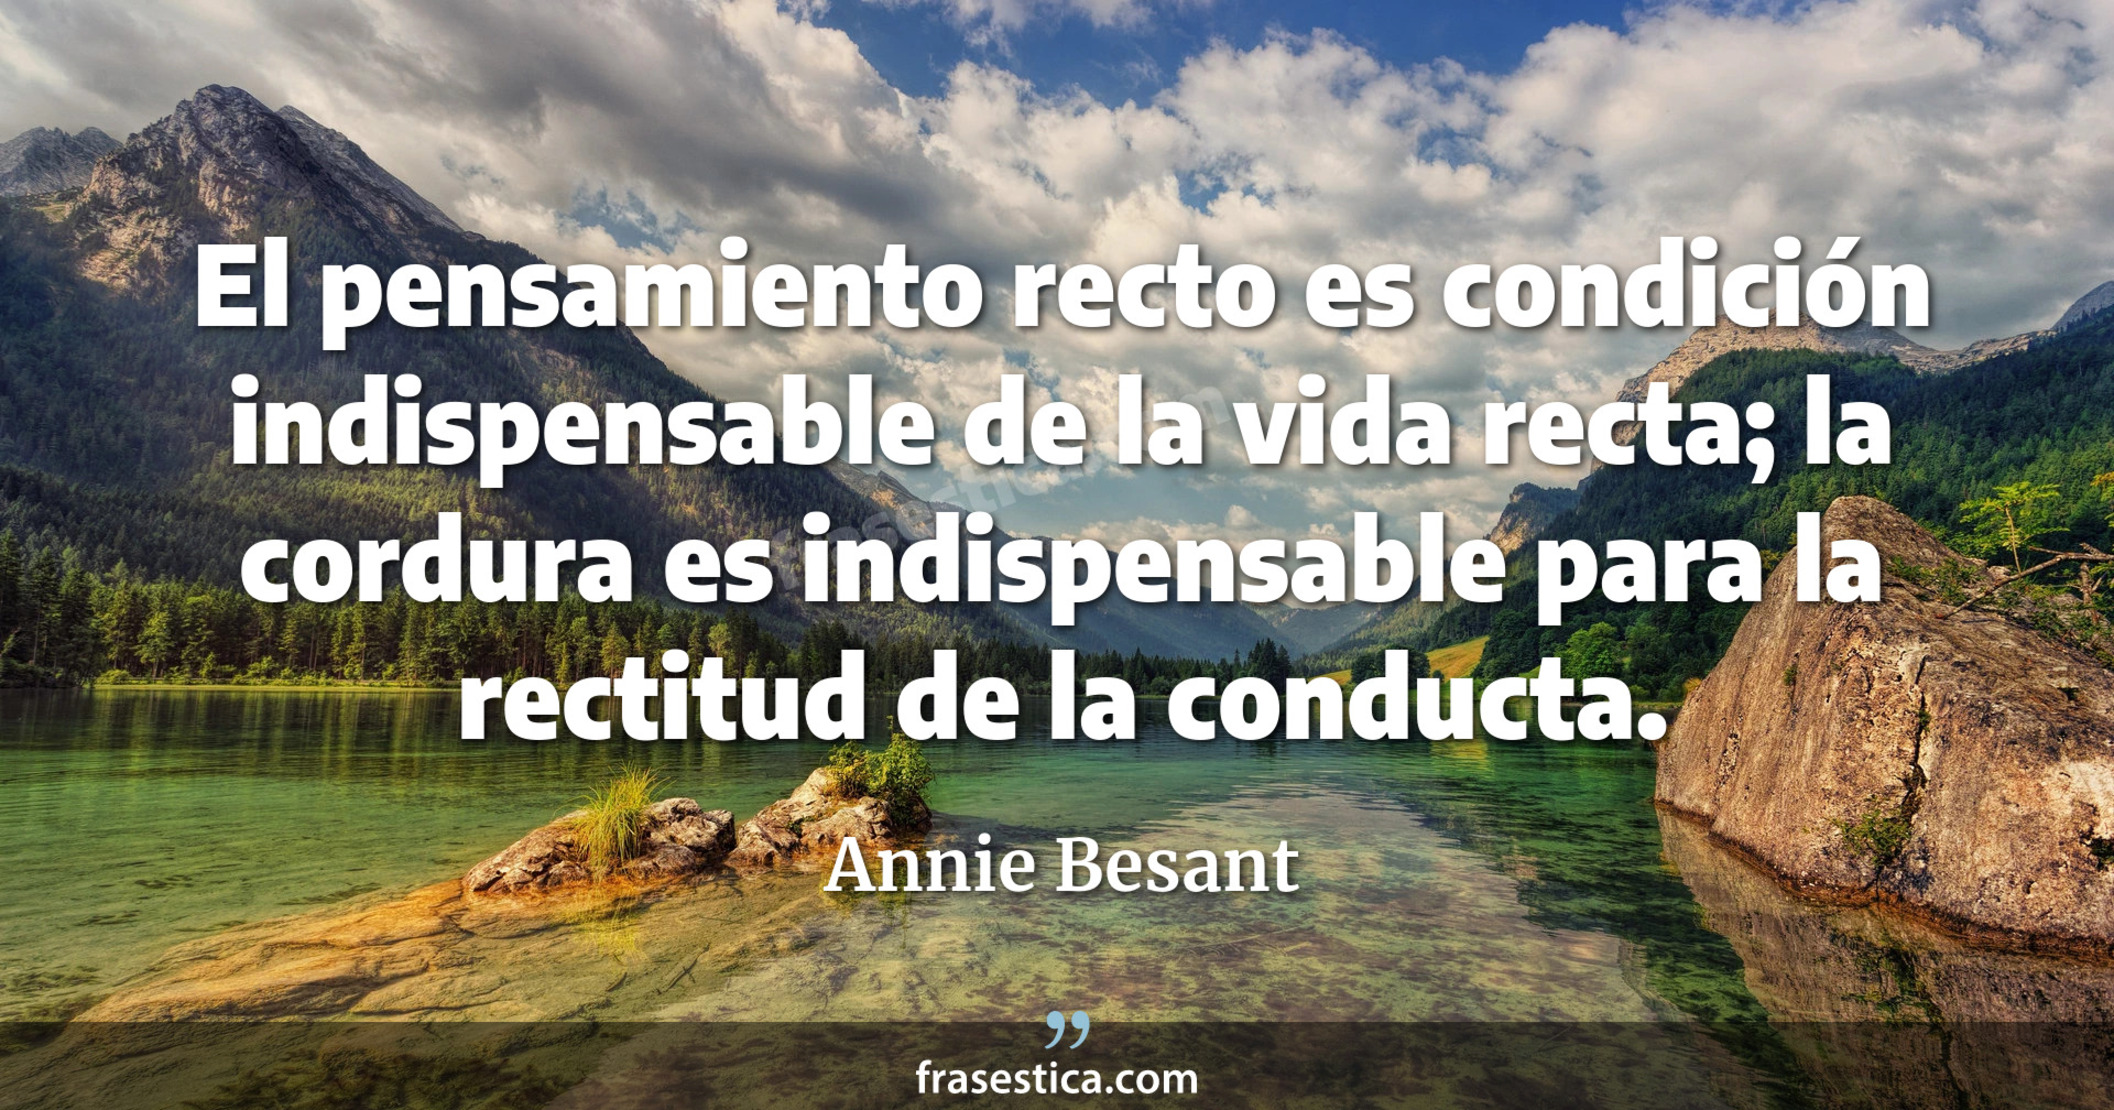 El pensamiento recto es condición indispensable de la vida recta; la cordura es indispensable para la rectitud de la conducta. - Annie Besant